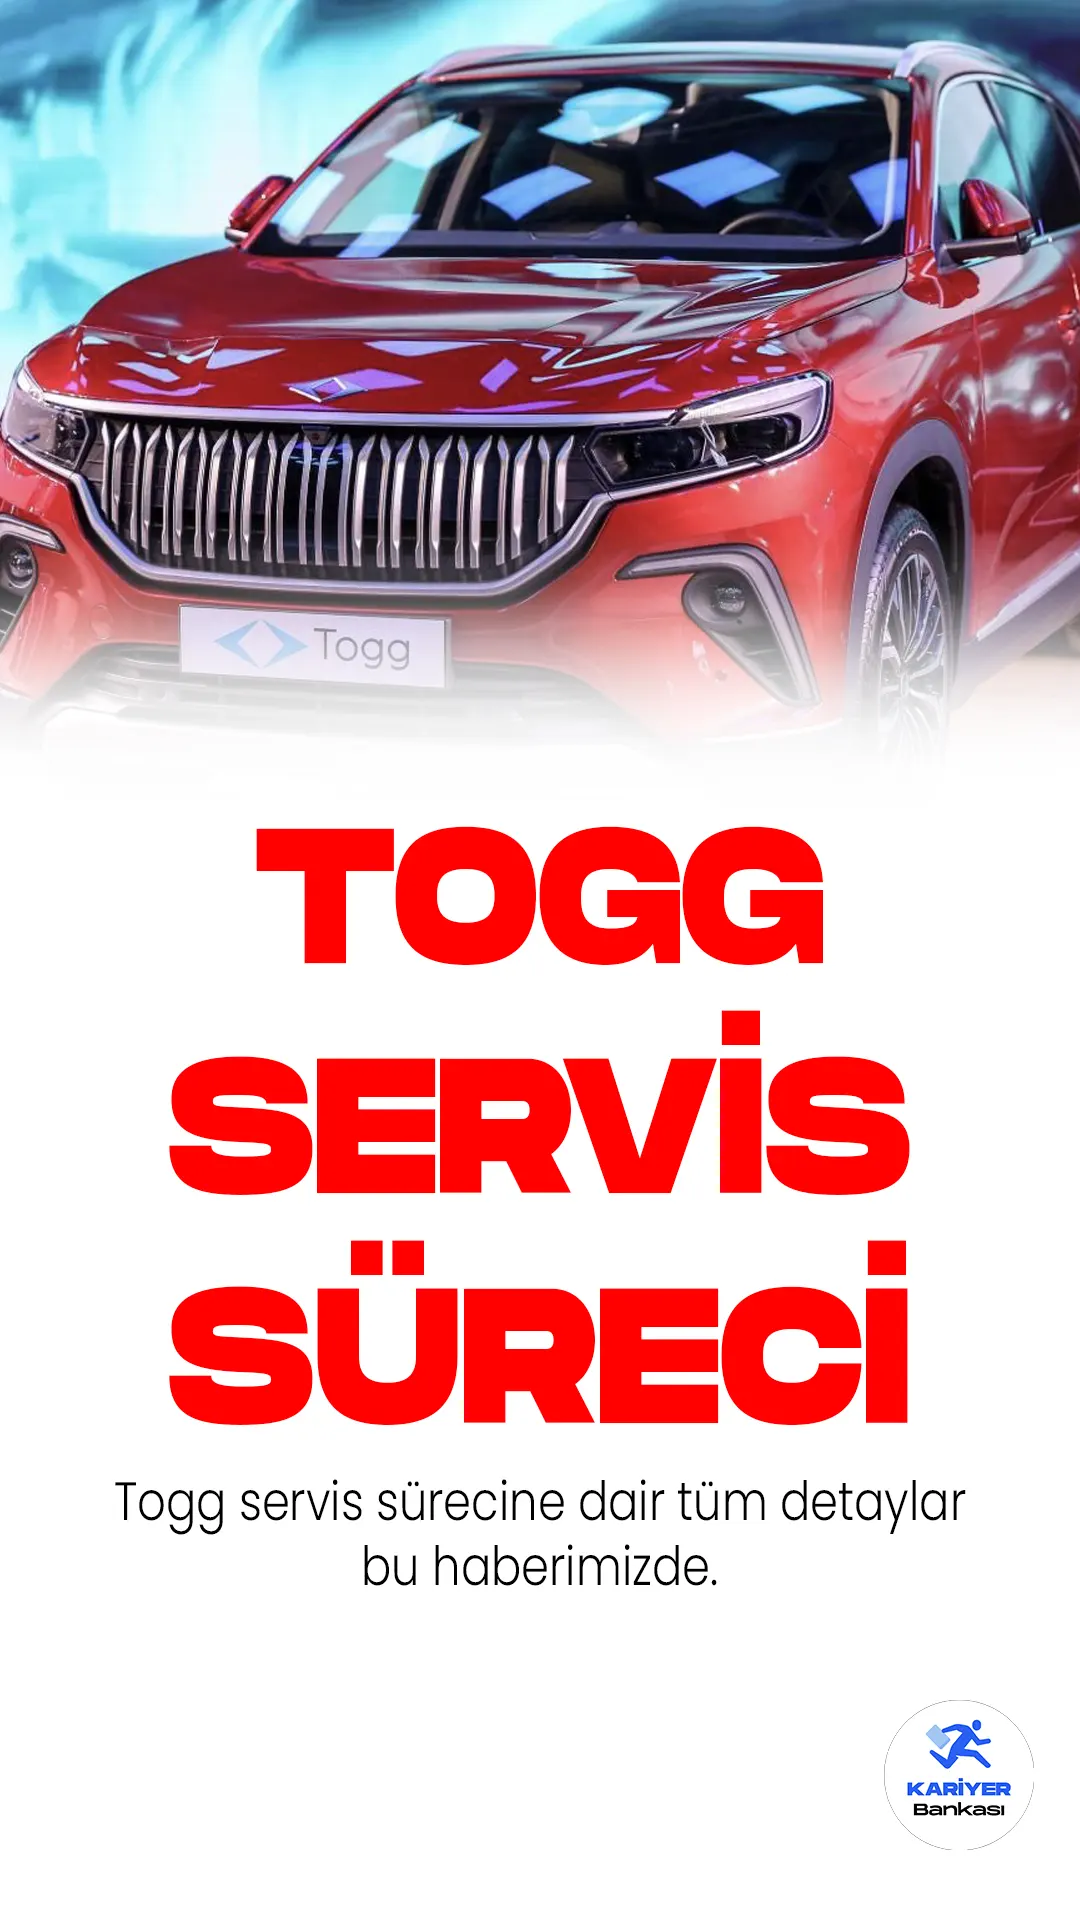 Togg Servis Sürecinde Merak Edilen Detaylar.Türkiye'nin yerli otomobili TOGG, Ankara'da yaşanan ilk trafik kazasının ardından gündemde kalmaya devam ediyor. Kazanın ardından Togg'un yedek parça ve onarım işlemleri merak edilirken, aracın akıllı bir cihaz olduğu ve onarım işlemlerinin uzman ekipler tarafından yapılması gerektiği vurgulandı.